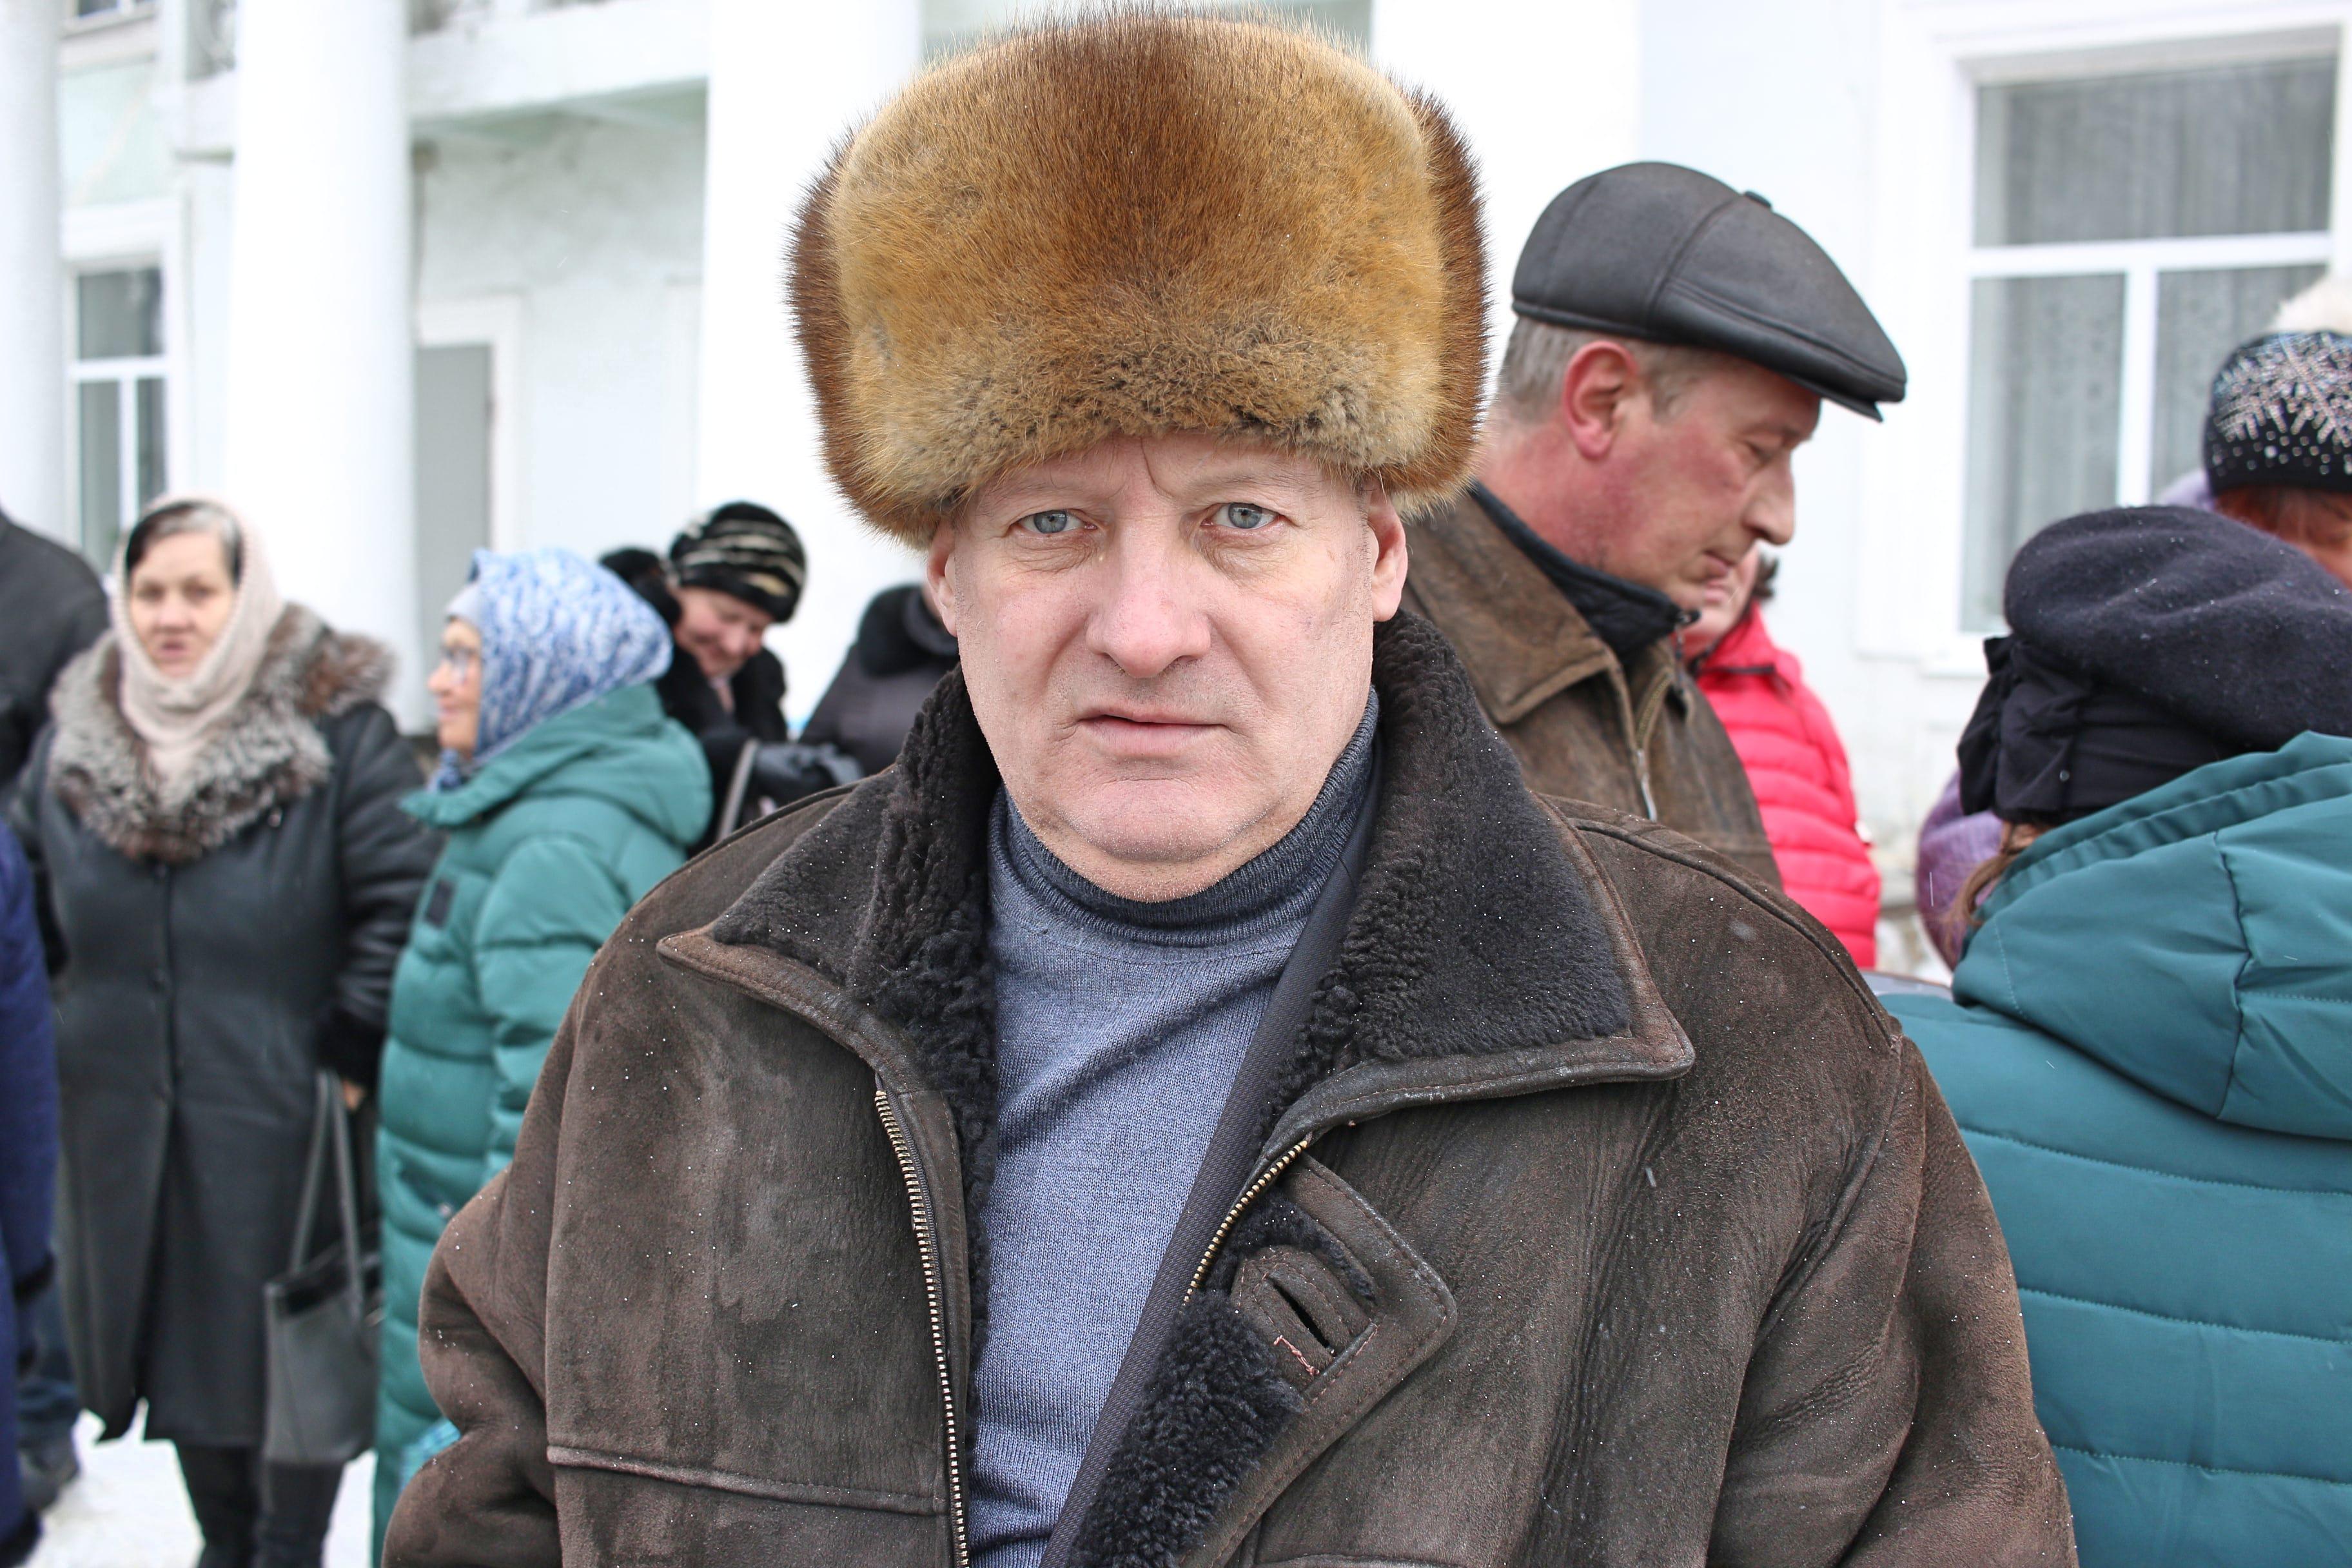 Участник пикета в Гуково 9 февраля 2019 года. Фото Вячеслава Прудникова для "Кавказского узла"